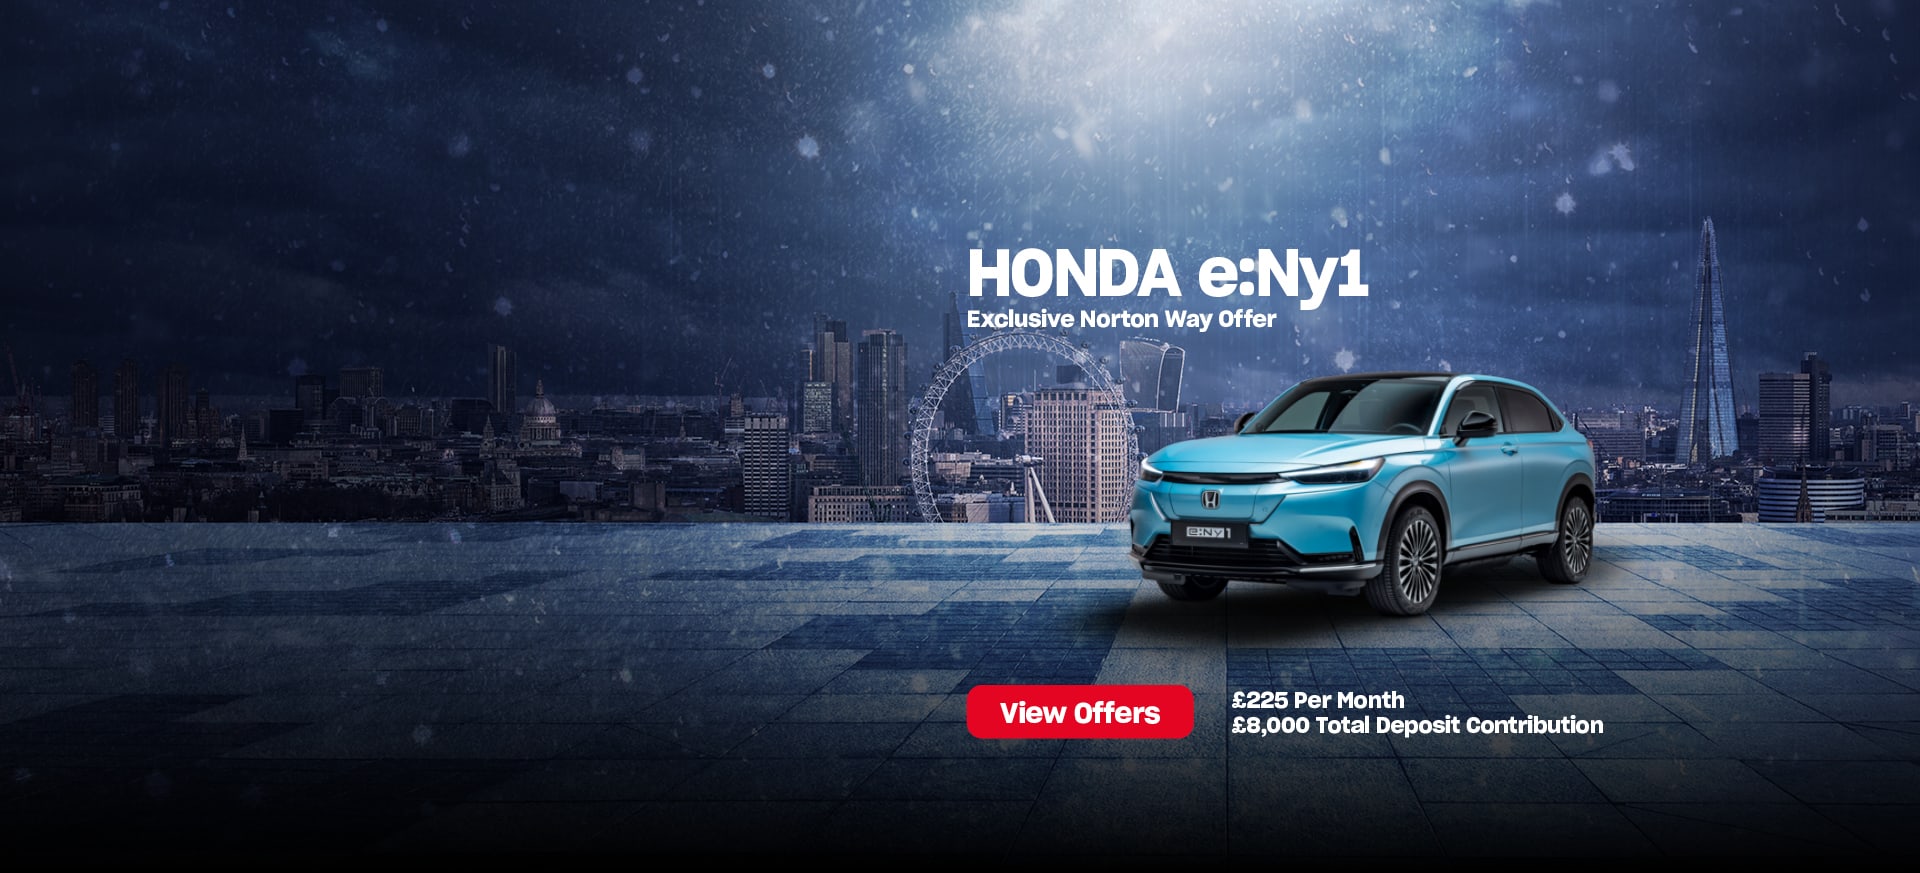 Honda e:Ny1 Winter Offer 